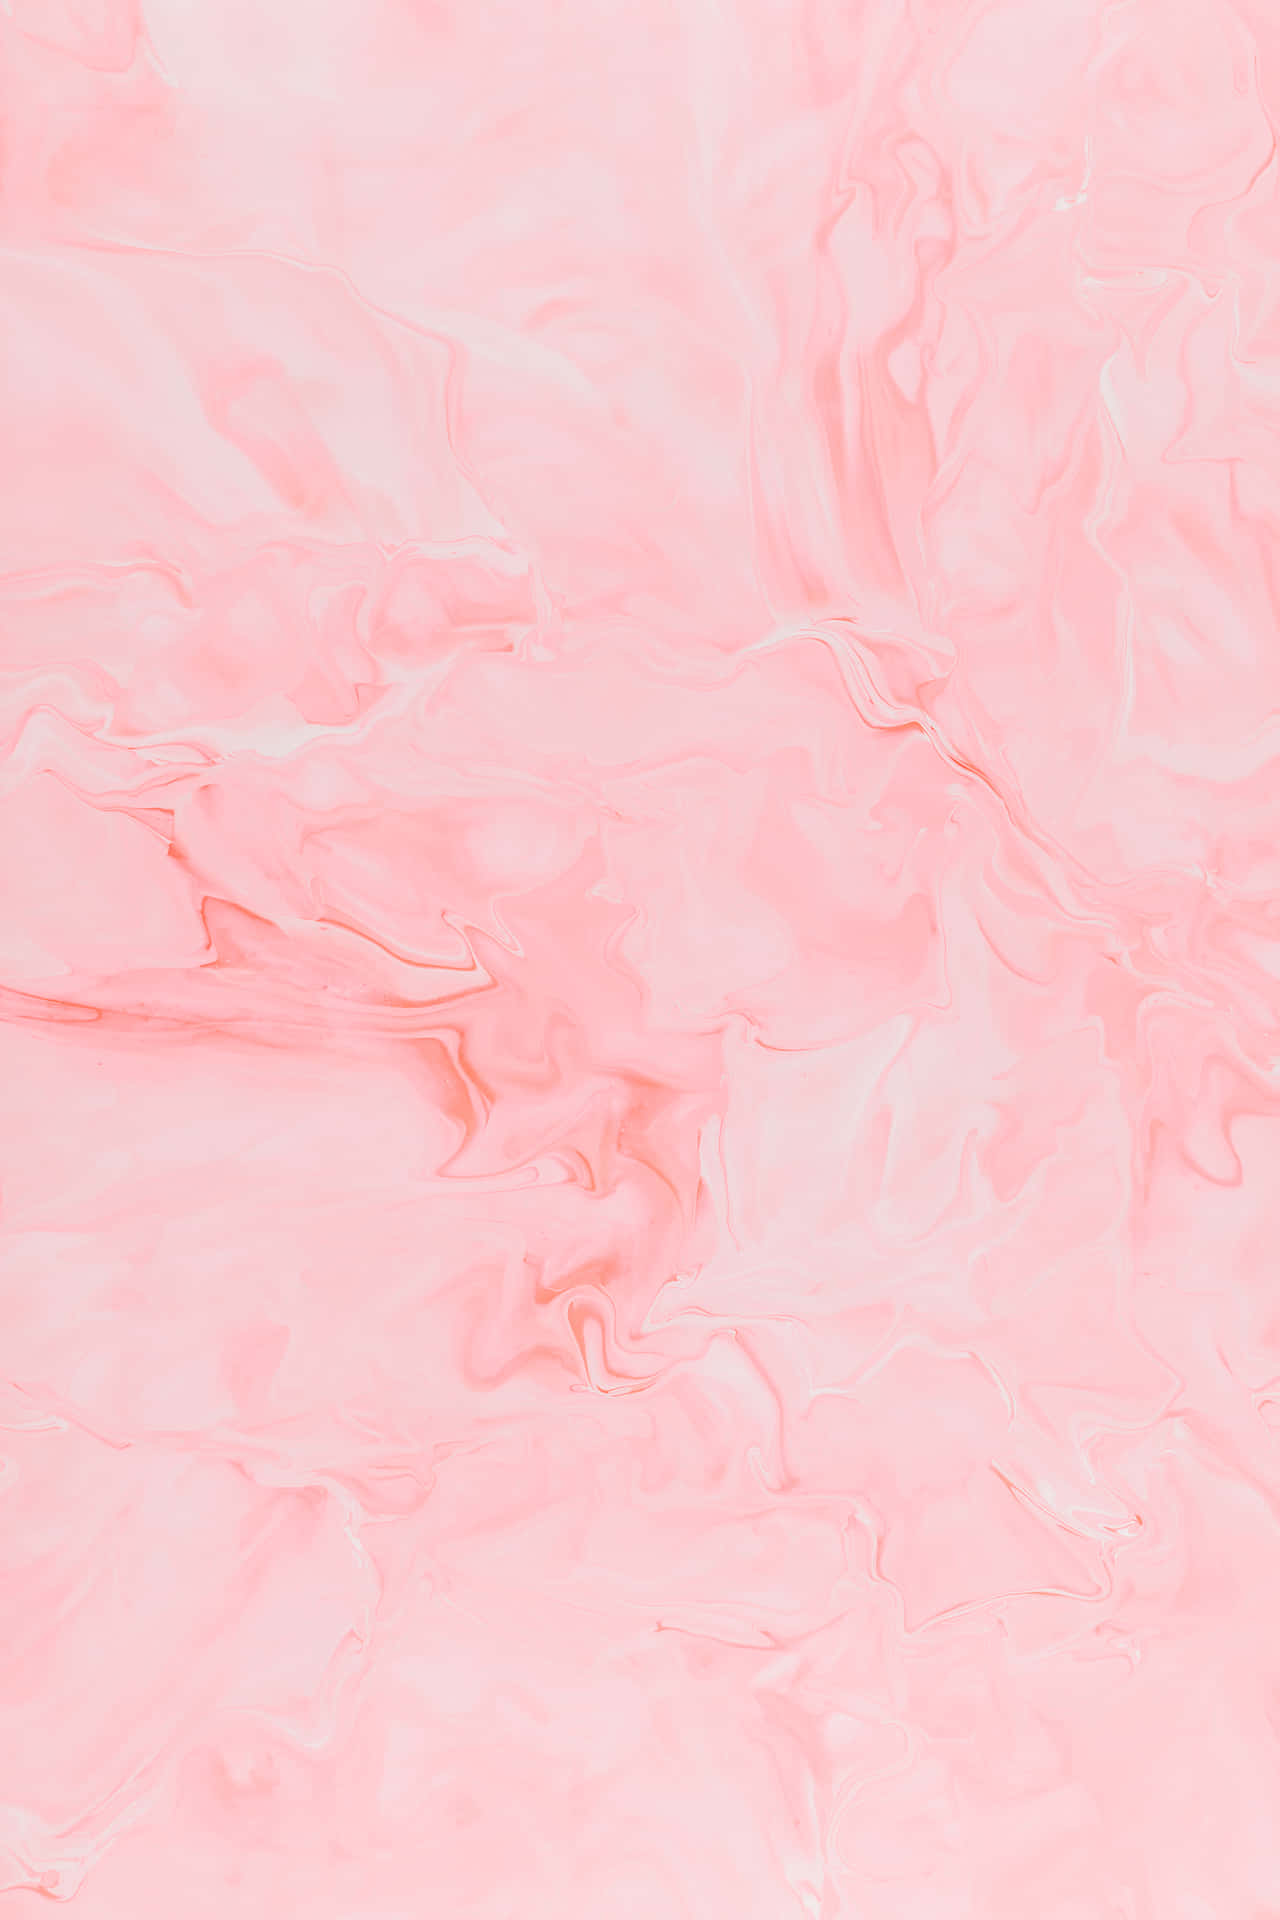 Vibrasestéticas De Color Rosa Bebé Fondo de pantalla